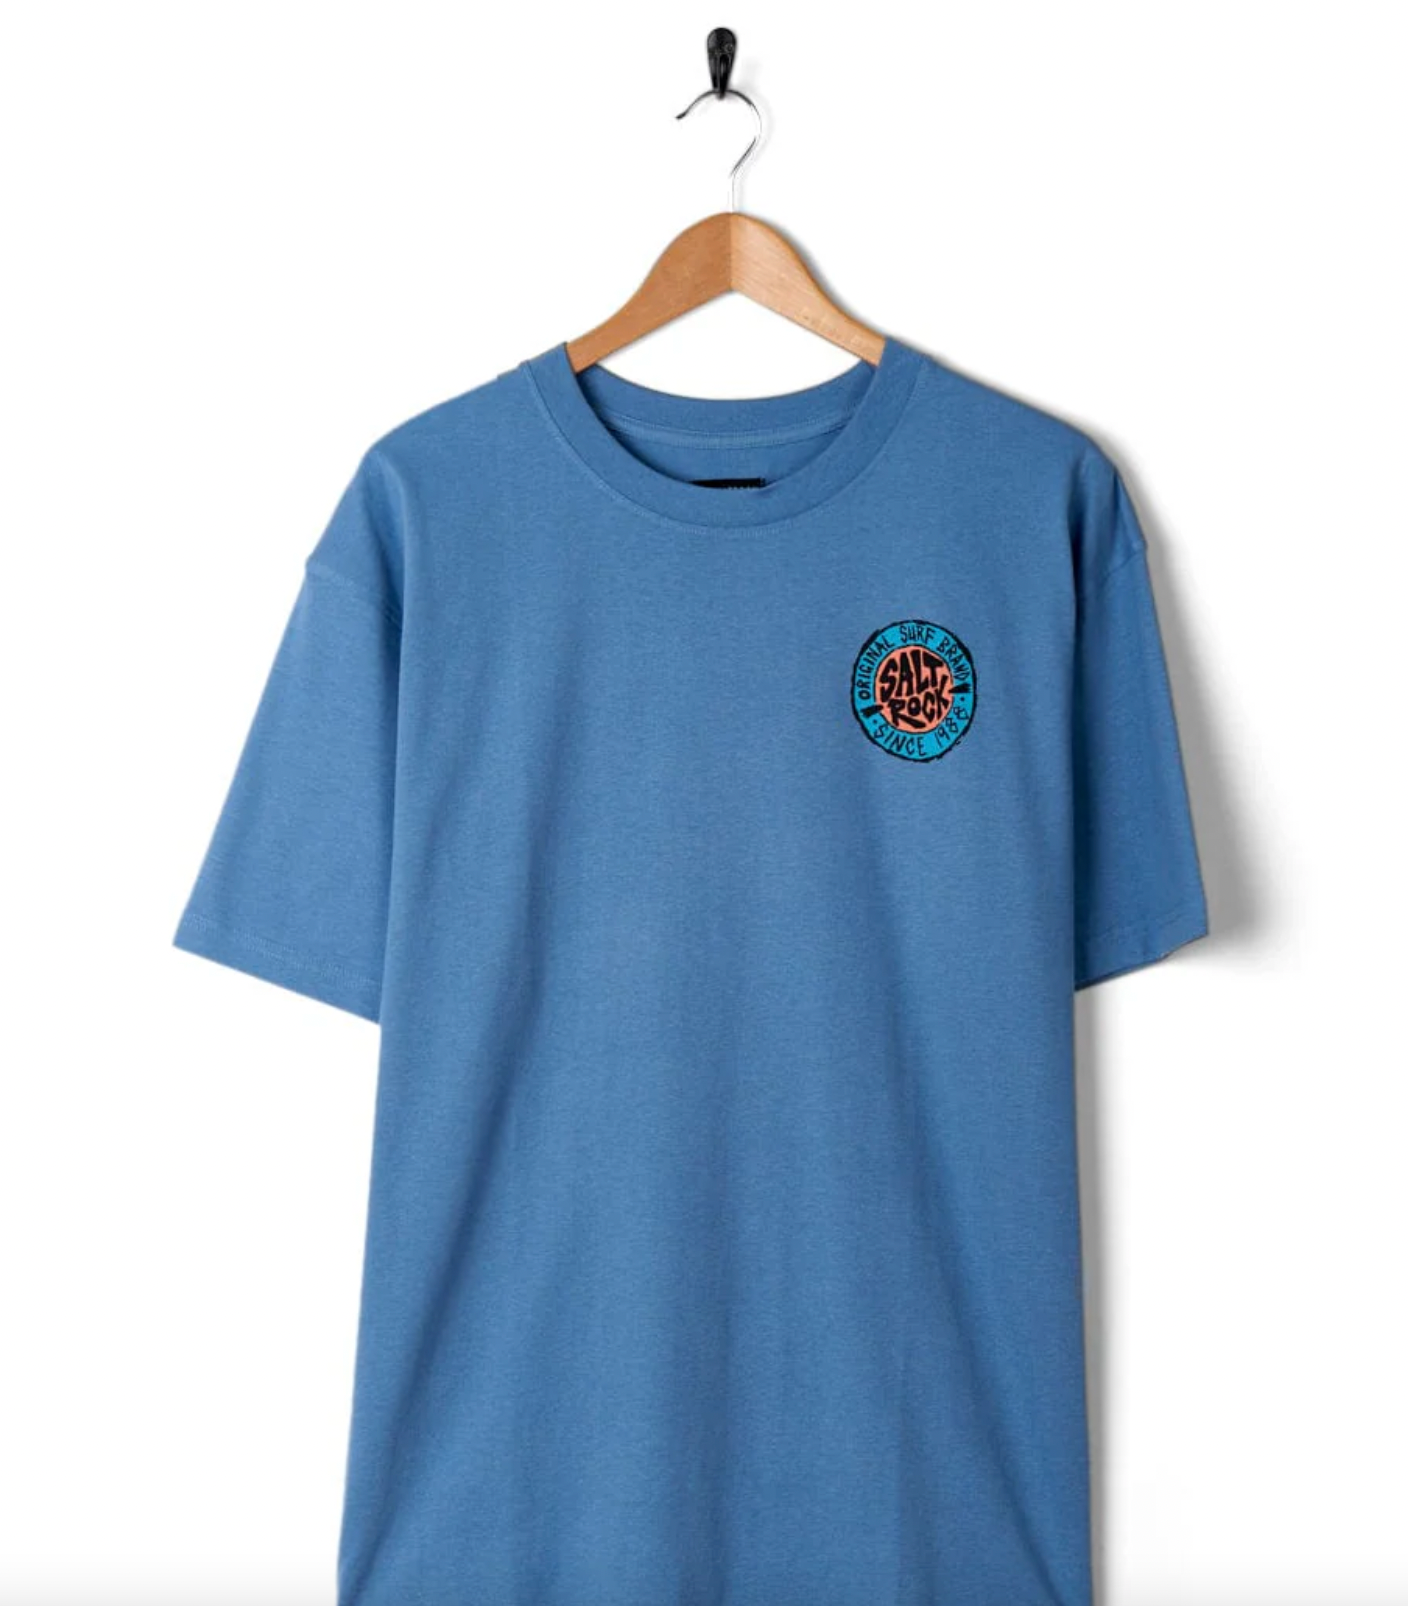 SALTROCK Original - Mens Short Sleeve T-Shirt - Blue